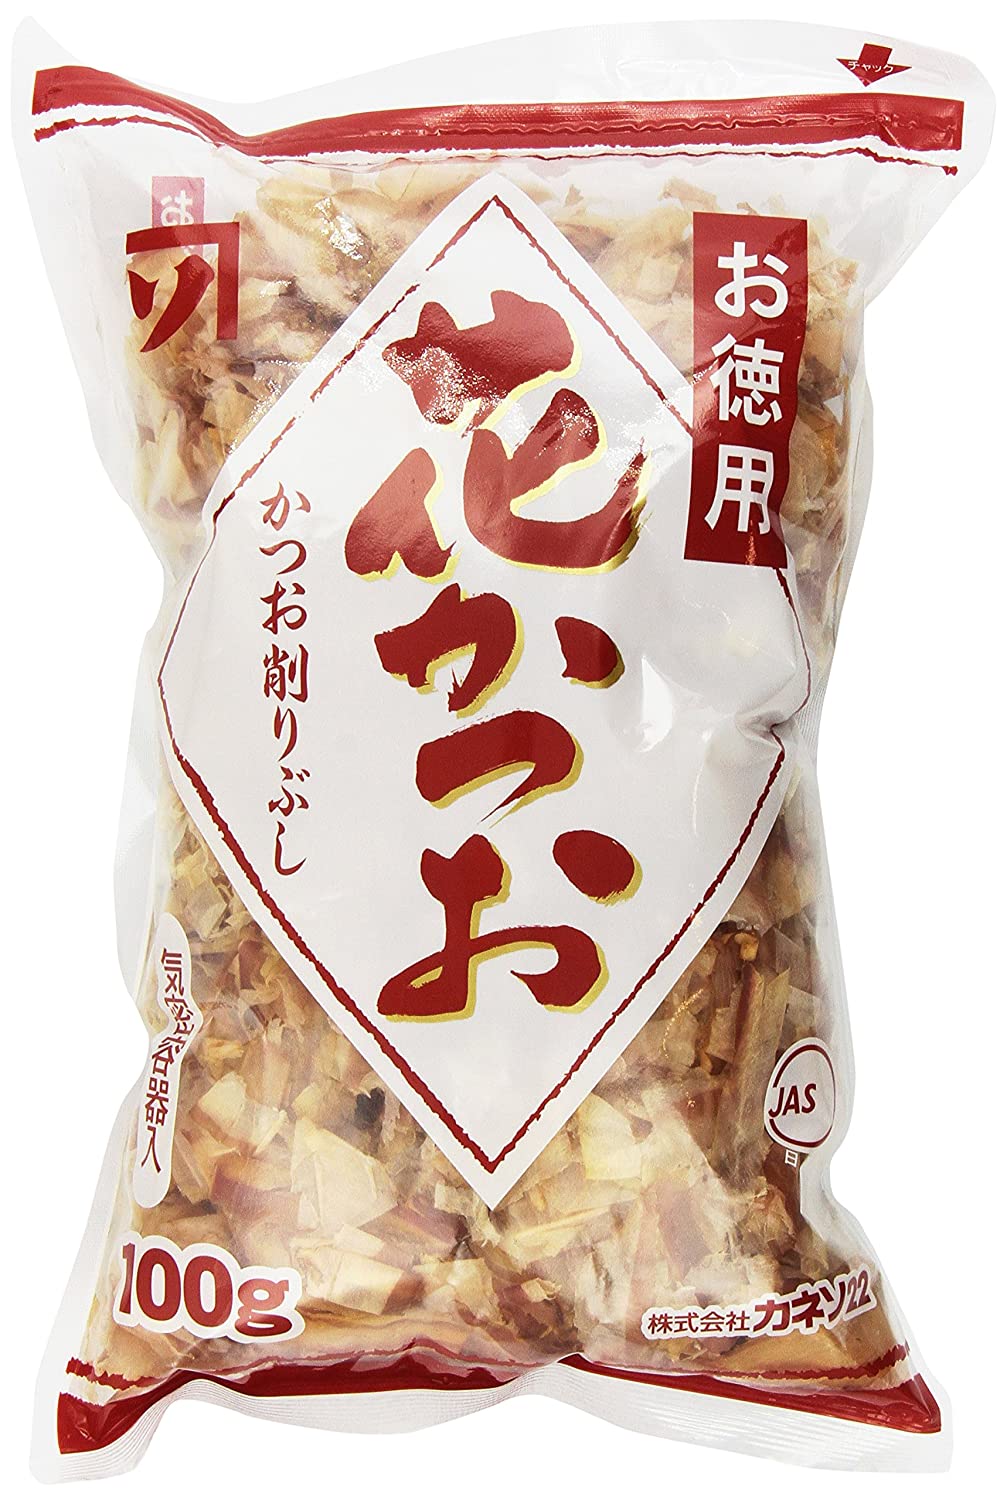 Los mejores copos de Bonito con cobertura de takoyaki- Kaneso Tokuyou Hanakatsuo Bonito Flakes